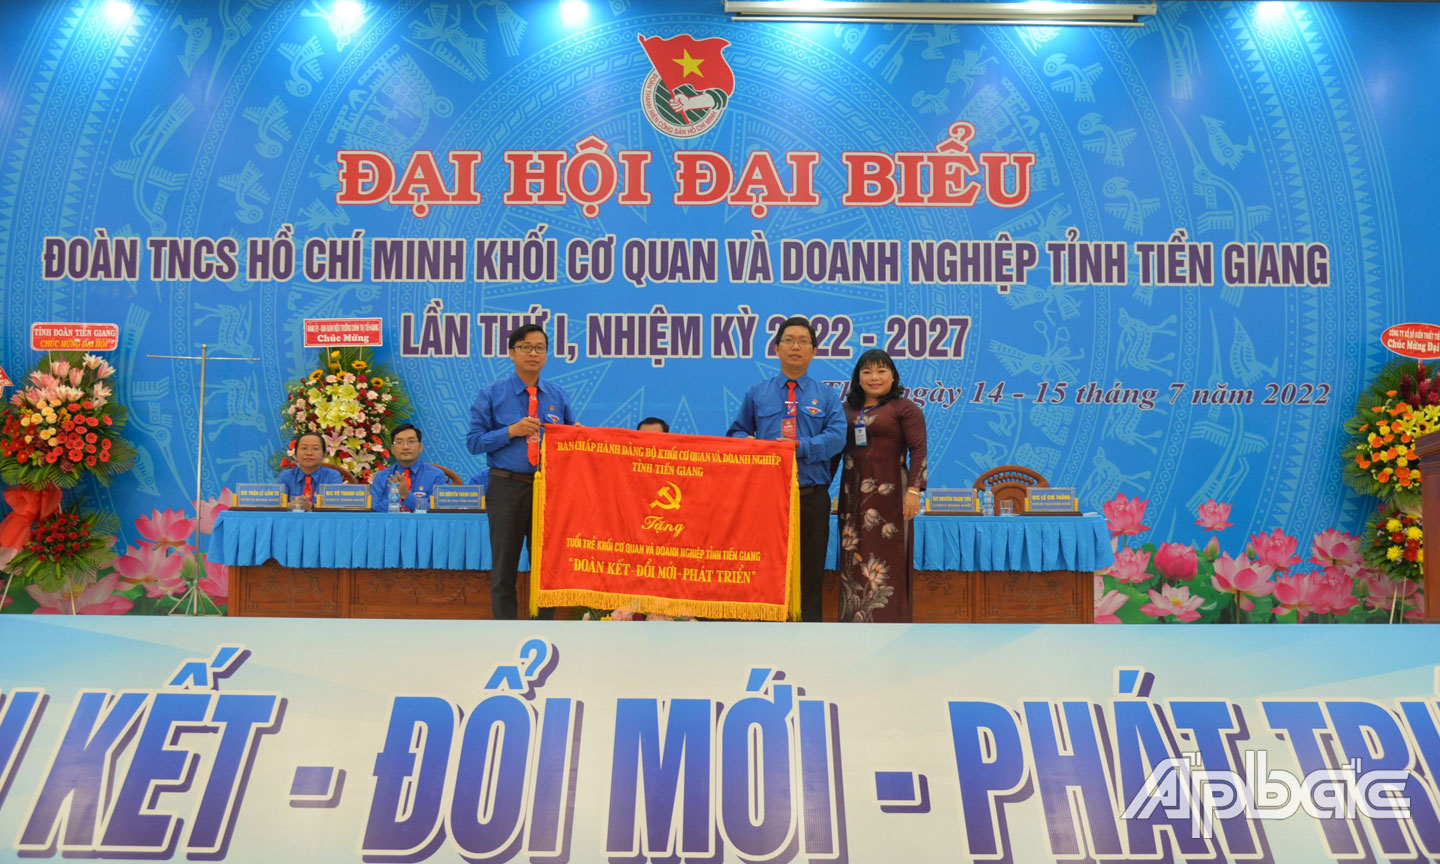 Ban Chấp hành Đảng bộ Khối Cơ quan và Doanh nghiệp tỉnh đã trao tặng Bức trướng cho tuổi trẻ khối Cơ quan  và Doanh nghiệp tỉnh Tiền Giang với dòng chữ “Đoàn kết - Đổi mới - Phát triển”.